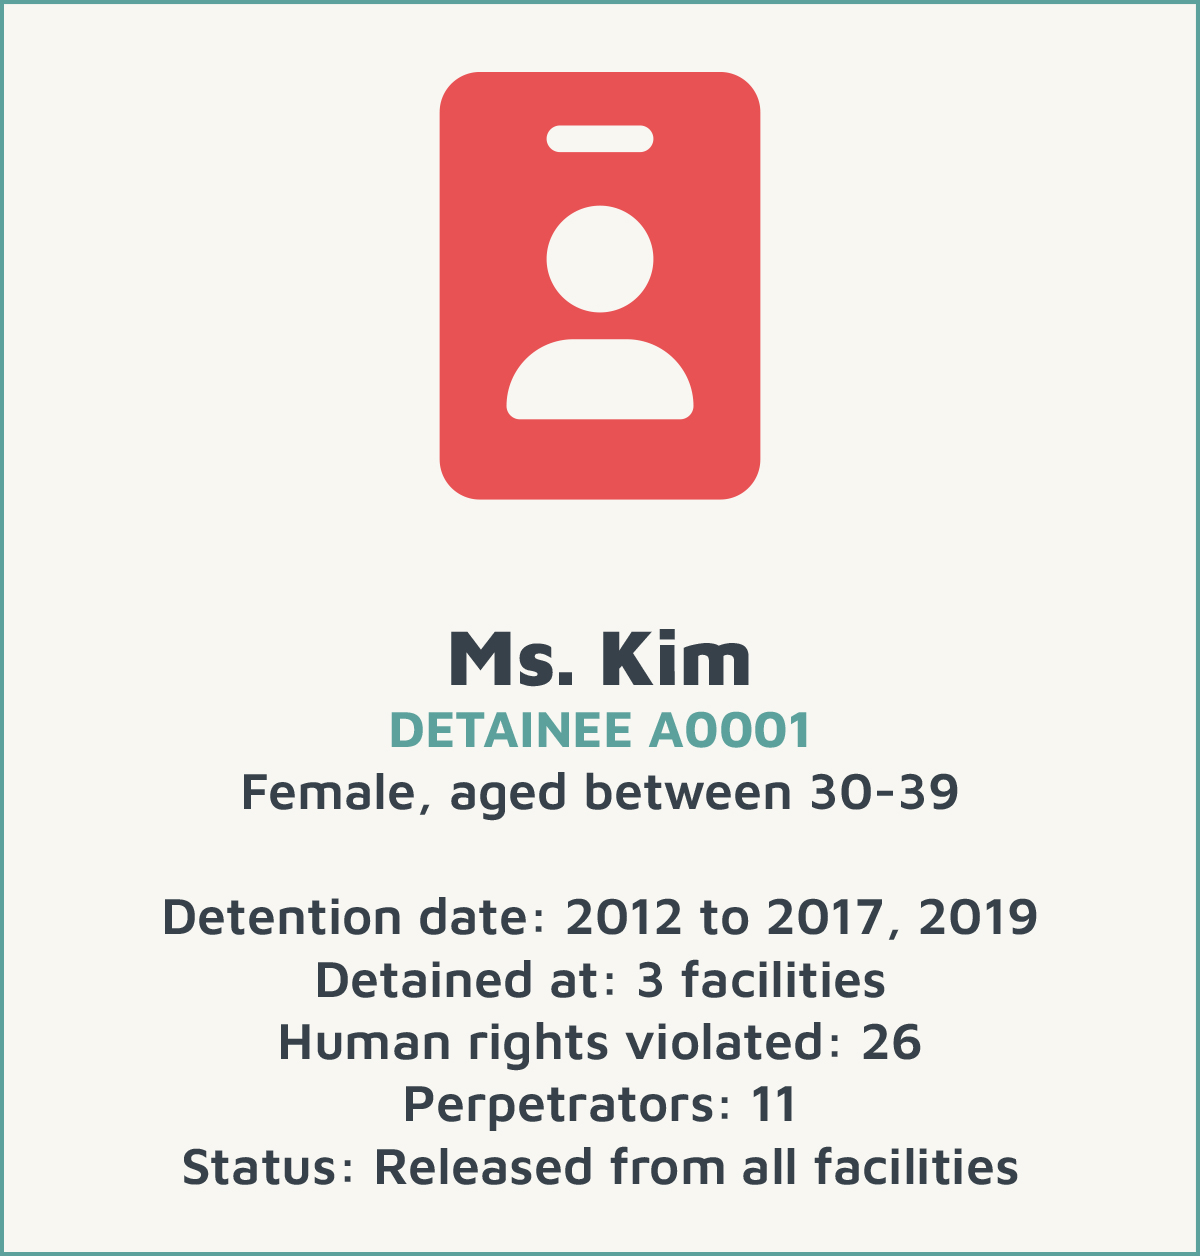 NKPD - Ms Kim